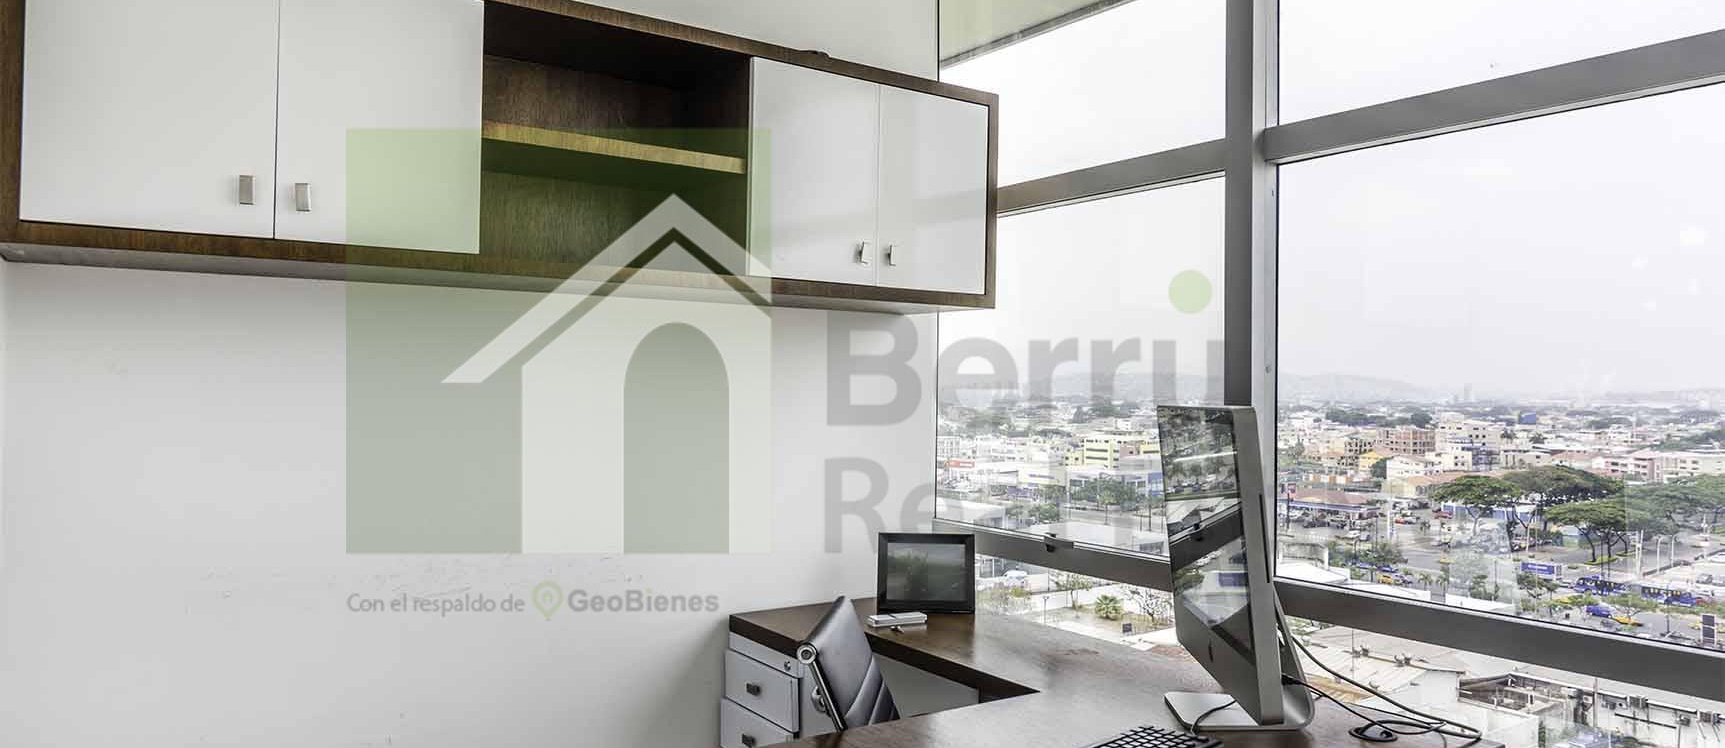 GeoBienes - Oficina en venta en Sky Building norte de Guayaquil - Plusvalia Guayaquil Casas de venta y alquiler Inmobiliaria Ecuador